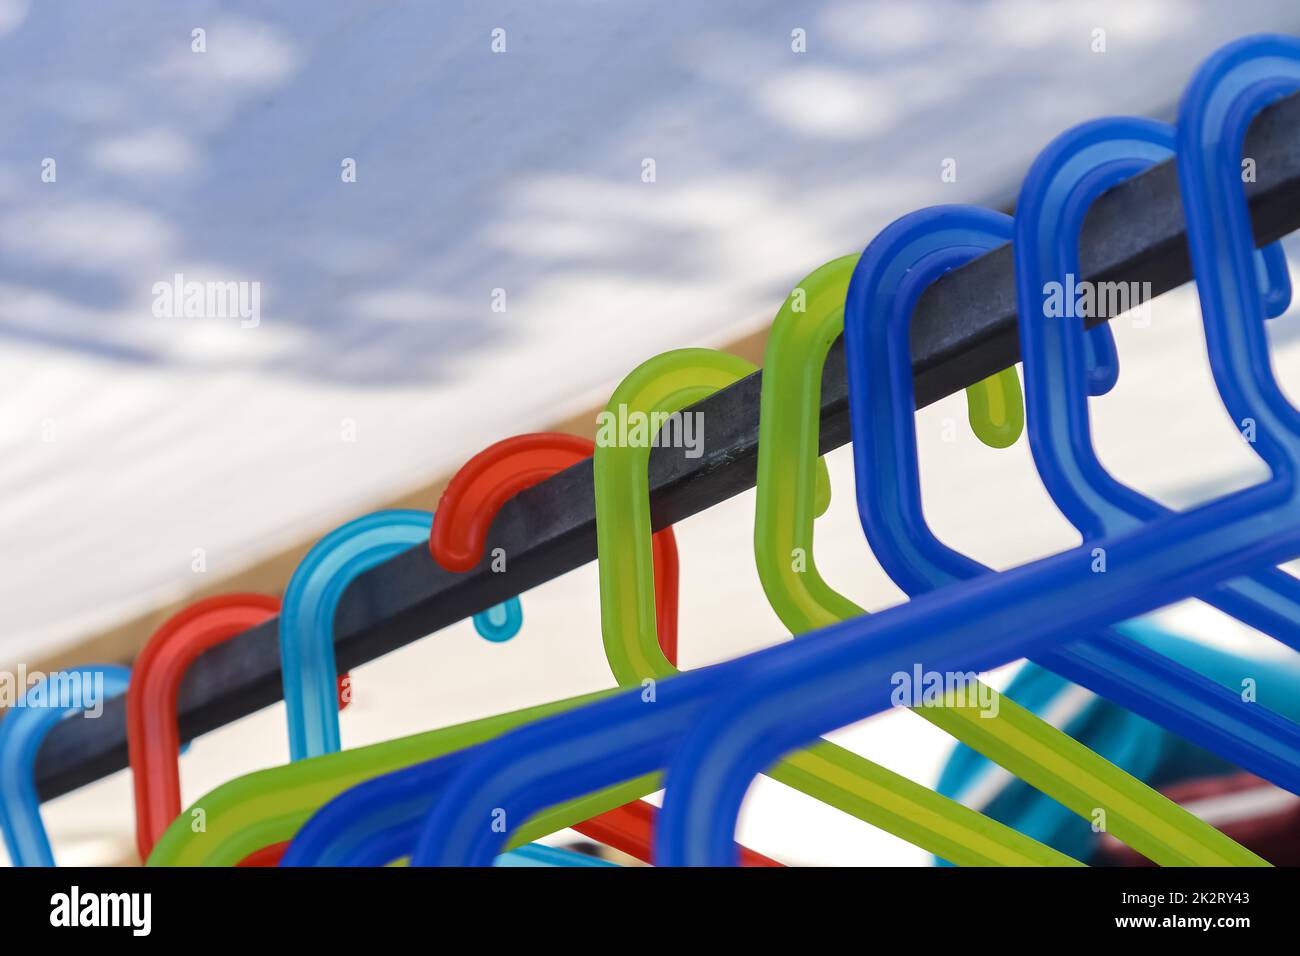 Nombreux cintres en plastique coloré sur un rail à vêtements Banque D'Images